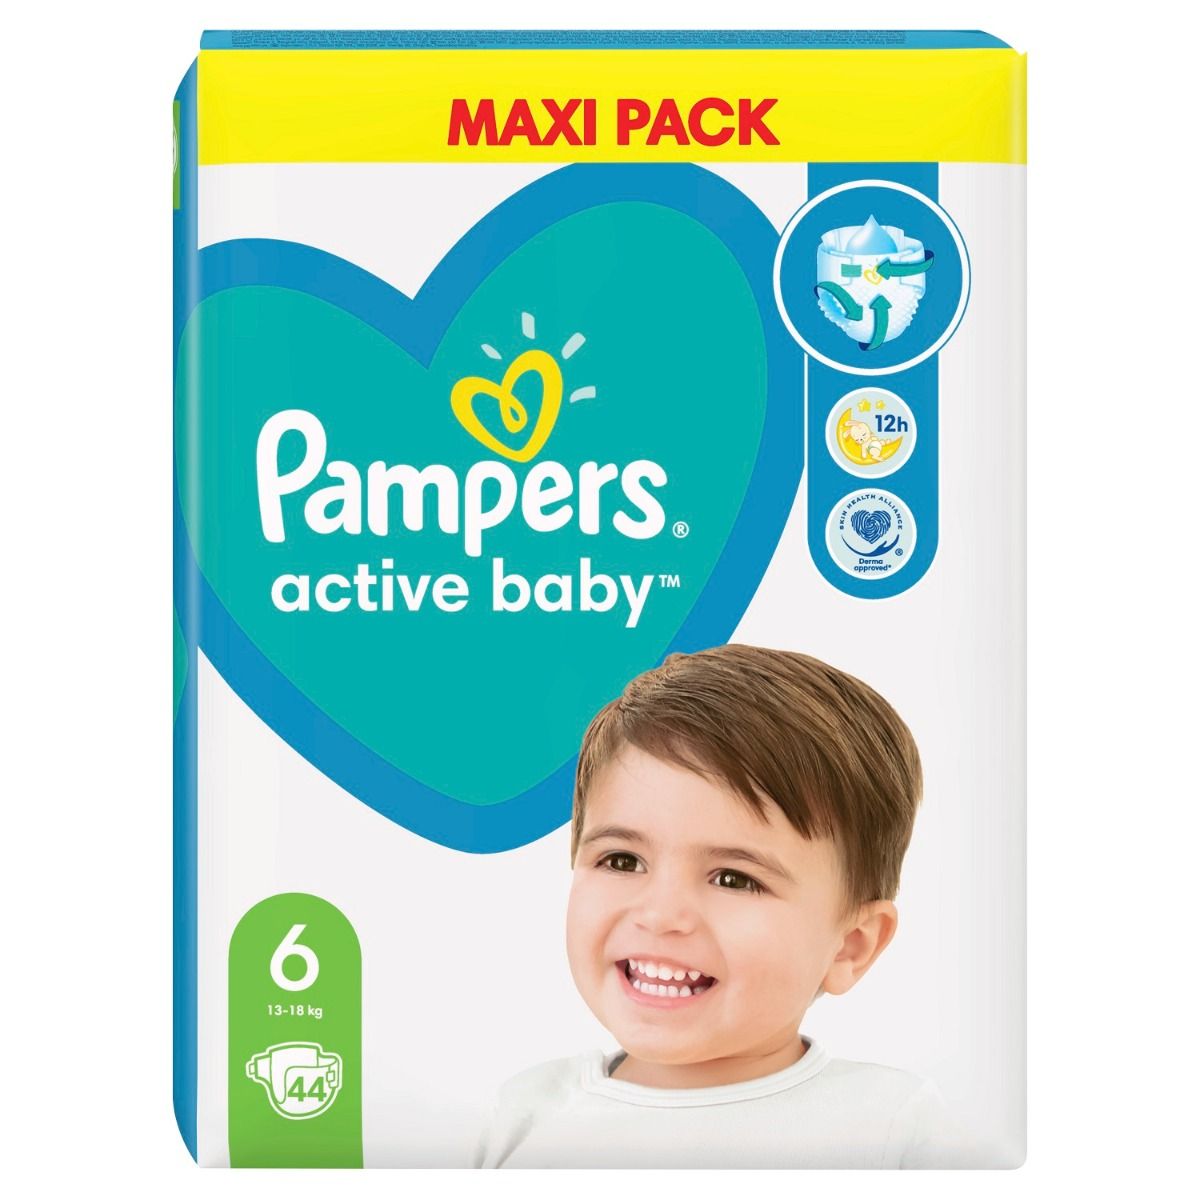 цена Одноразовые подгузники для детей Pampers Active Baby 6, 44 шт